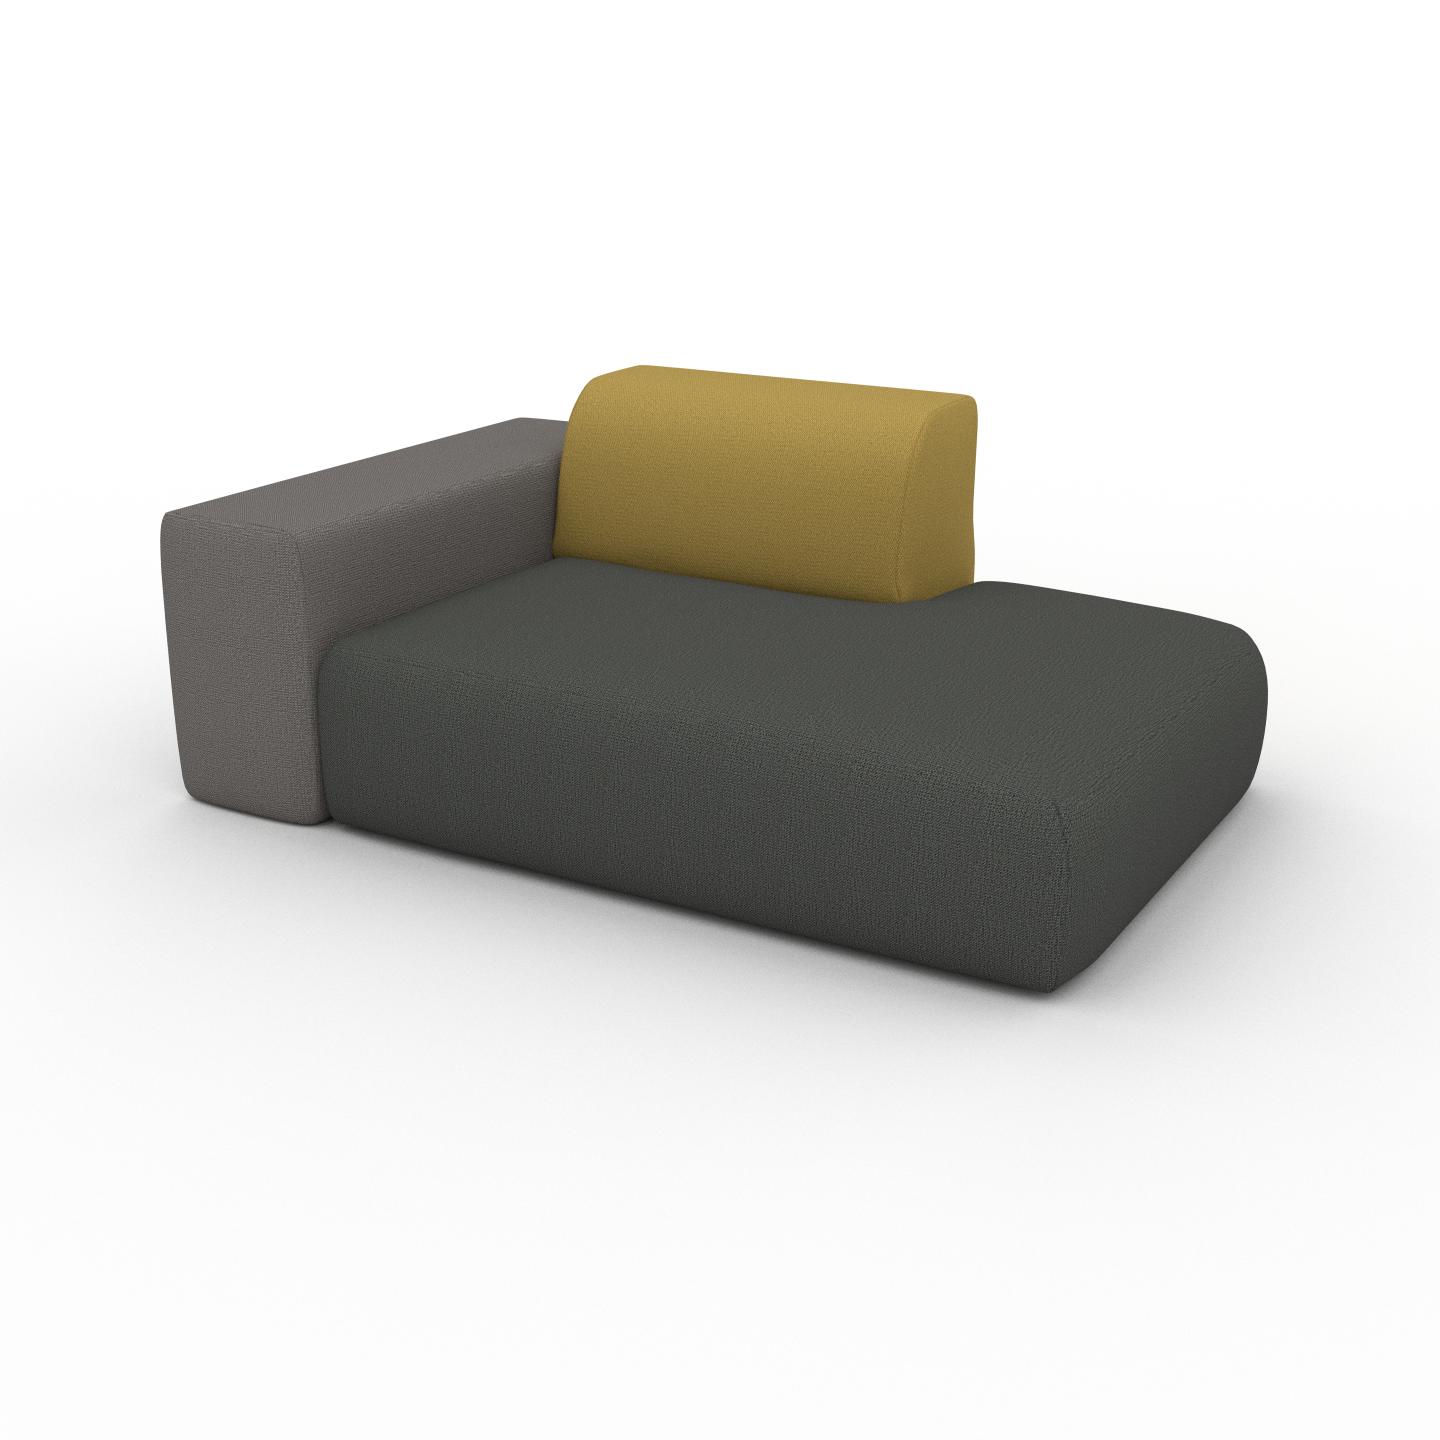 MYCS Sessel Steingrau - Eleganter Sessel: Hochwertige Qualität, einzigartiges Design - 168 x 72 x 107 cm, Individuell konfigurierbar